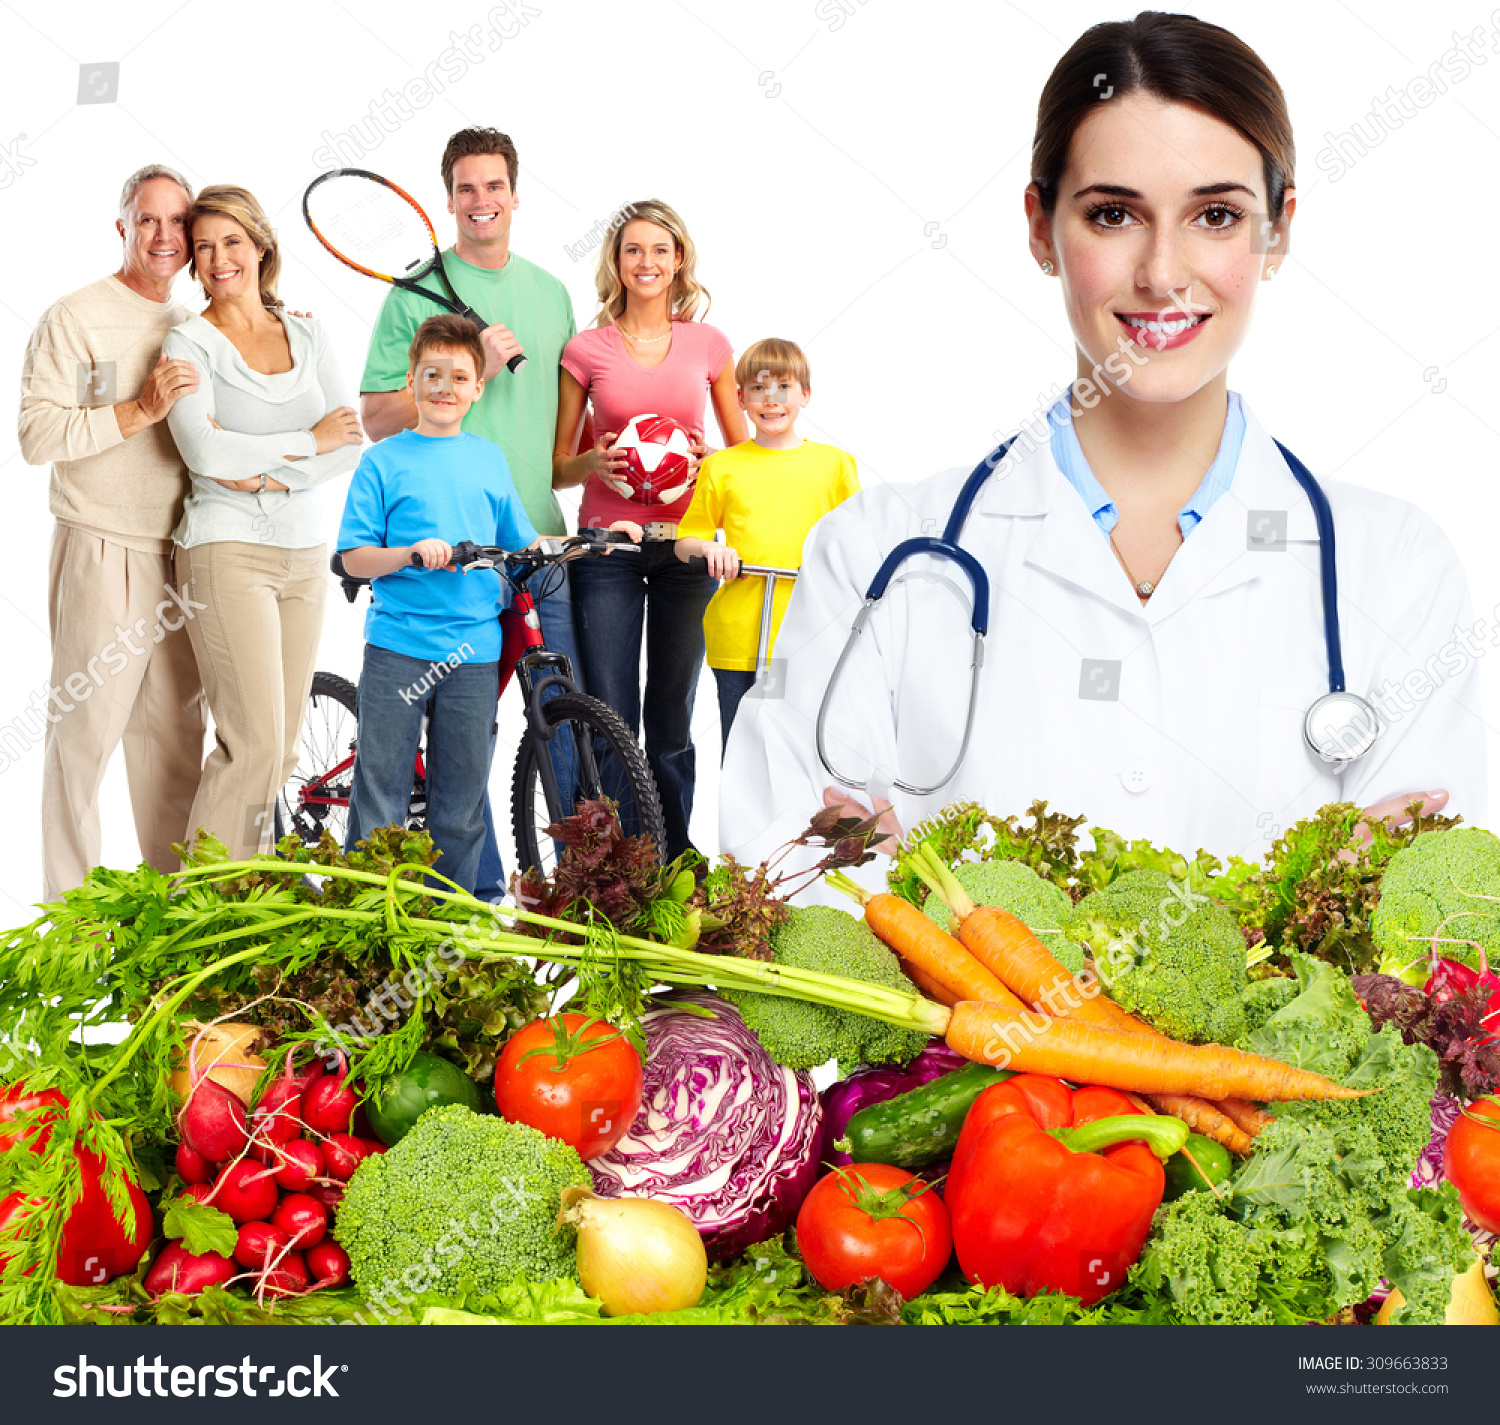 Здоровья различных групп населения. Питание и здоровье. Специалист по правильному питанию. Здоровое питание в семье. Диетолог картинки.